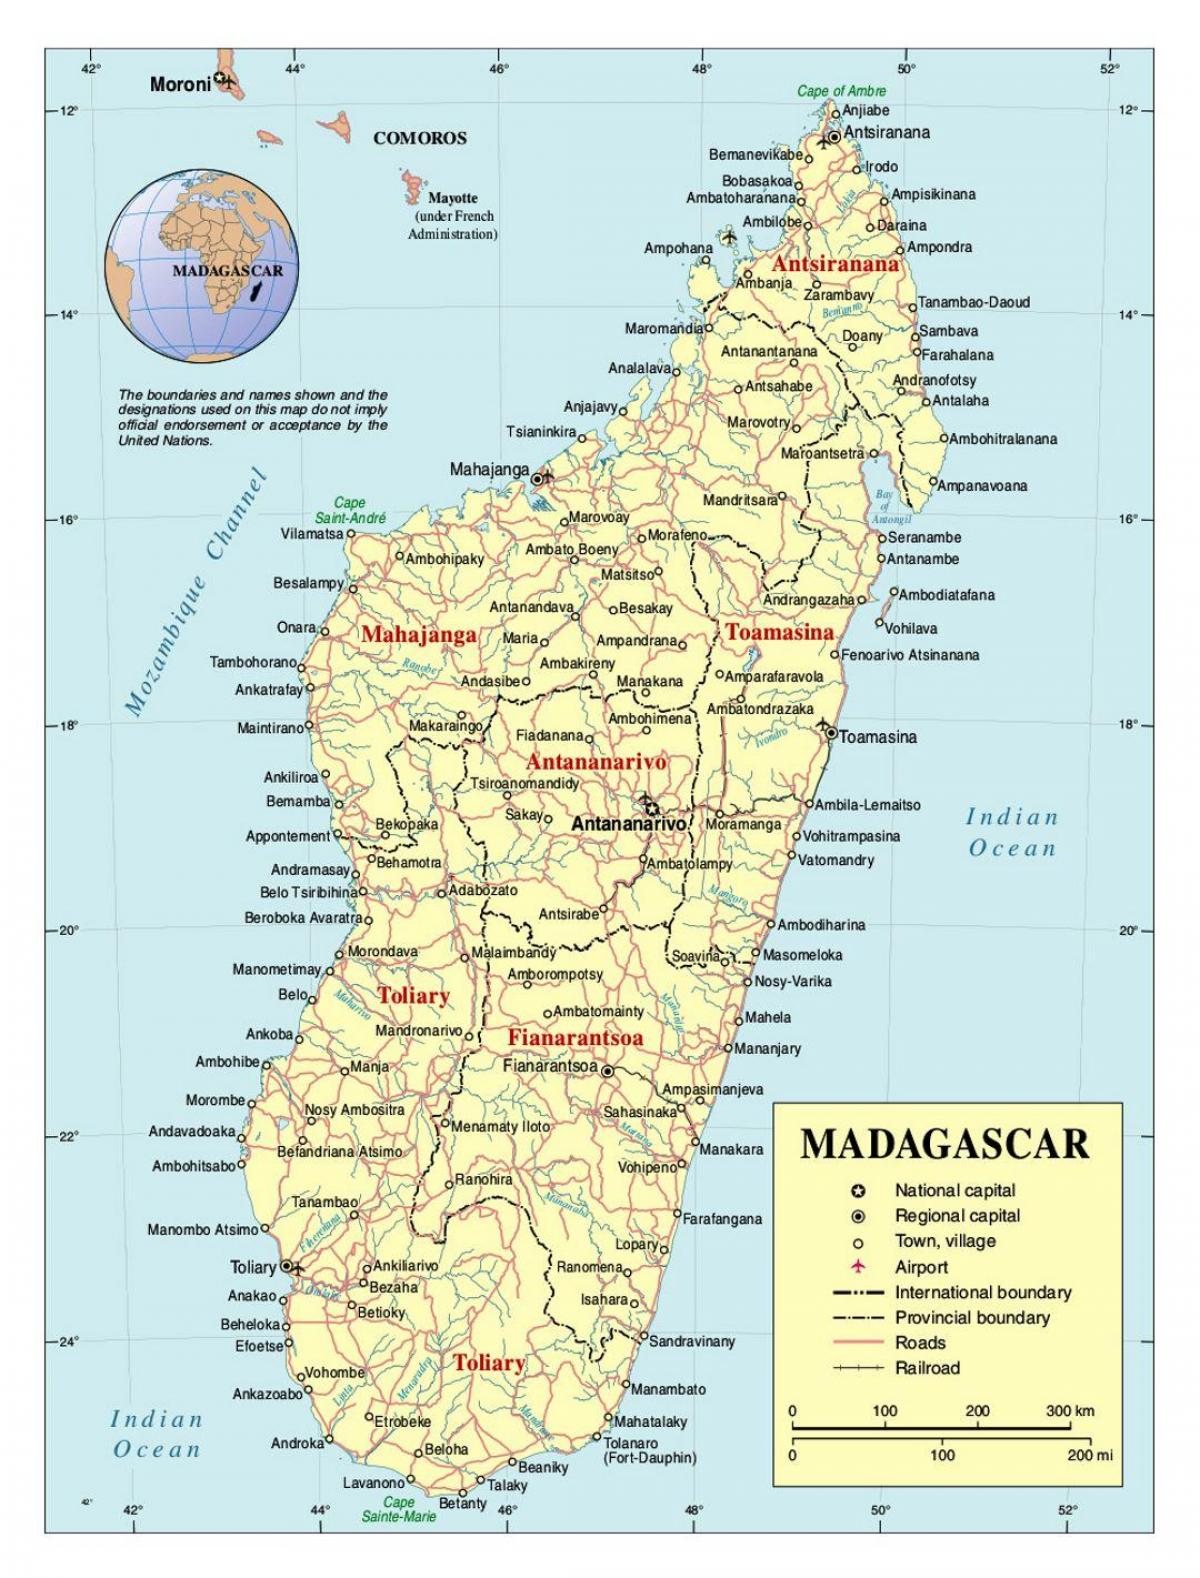 մանրամասն քարտեզը Մադագասկարի